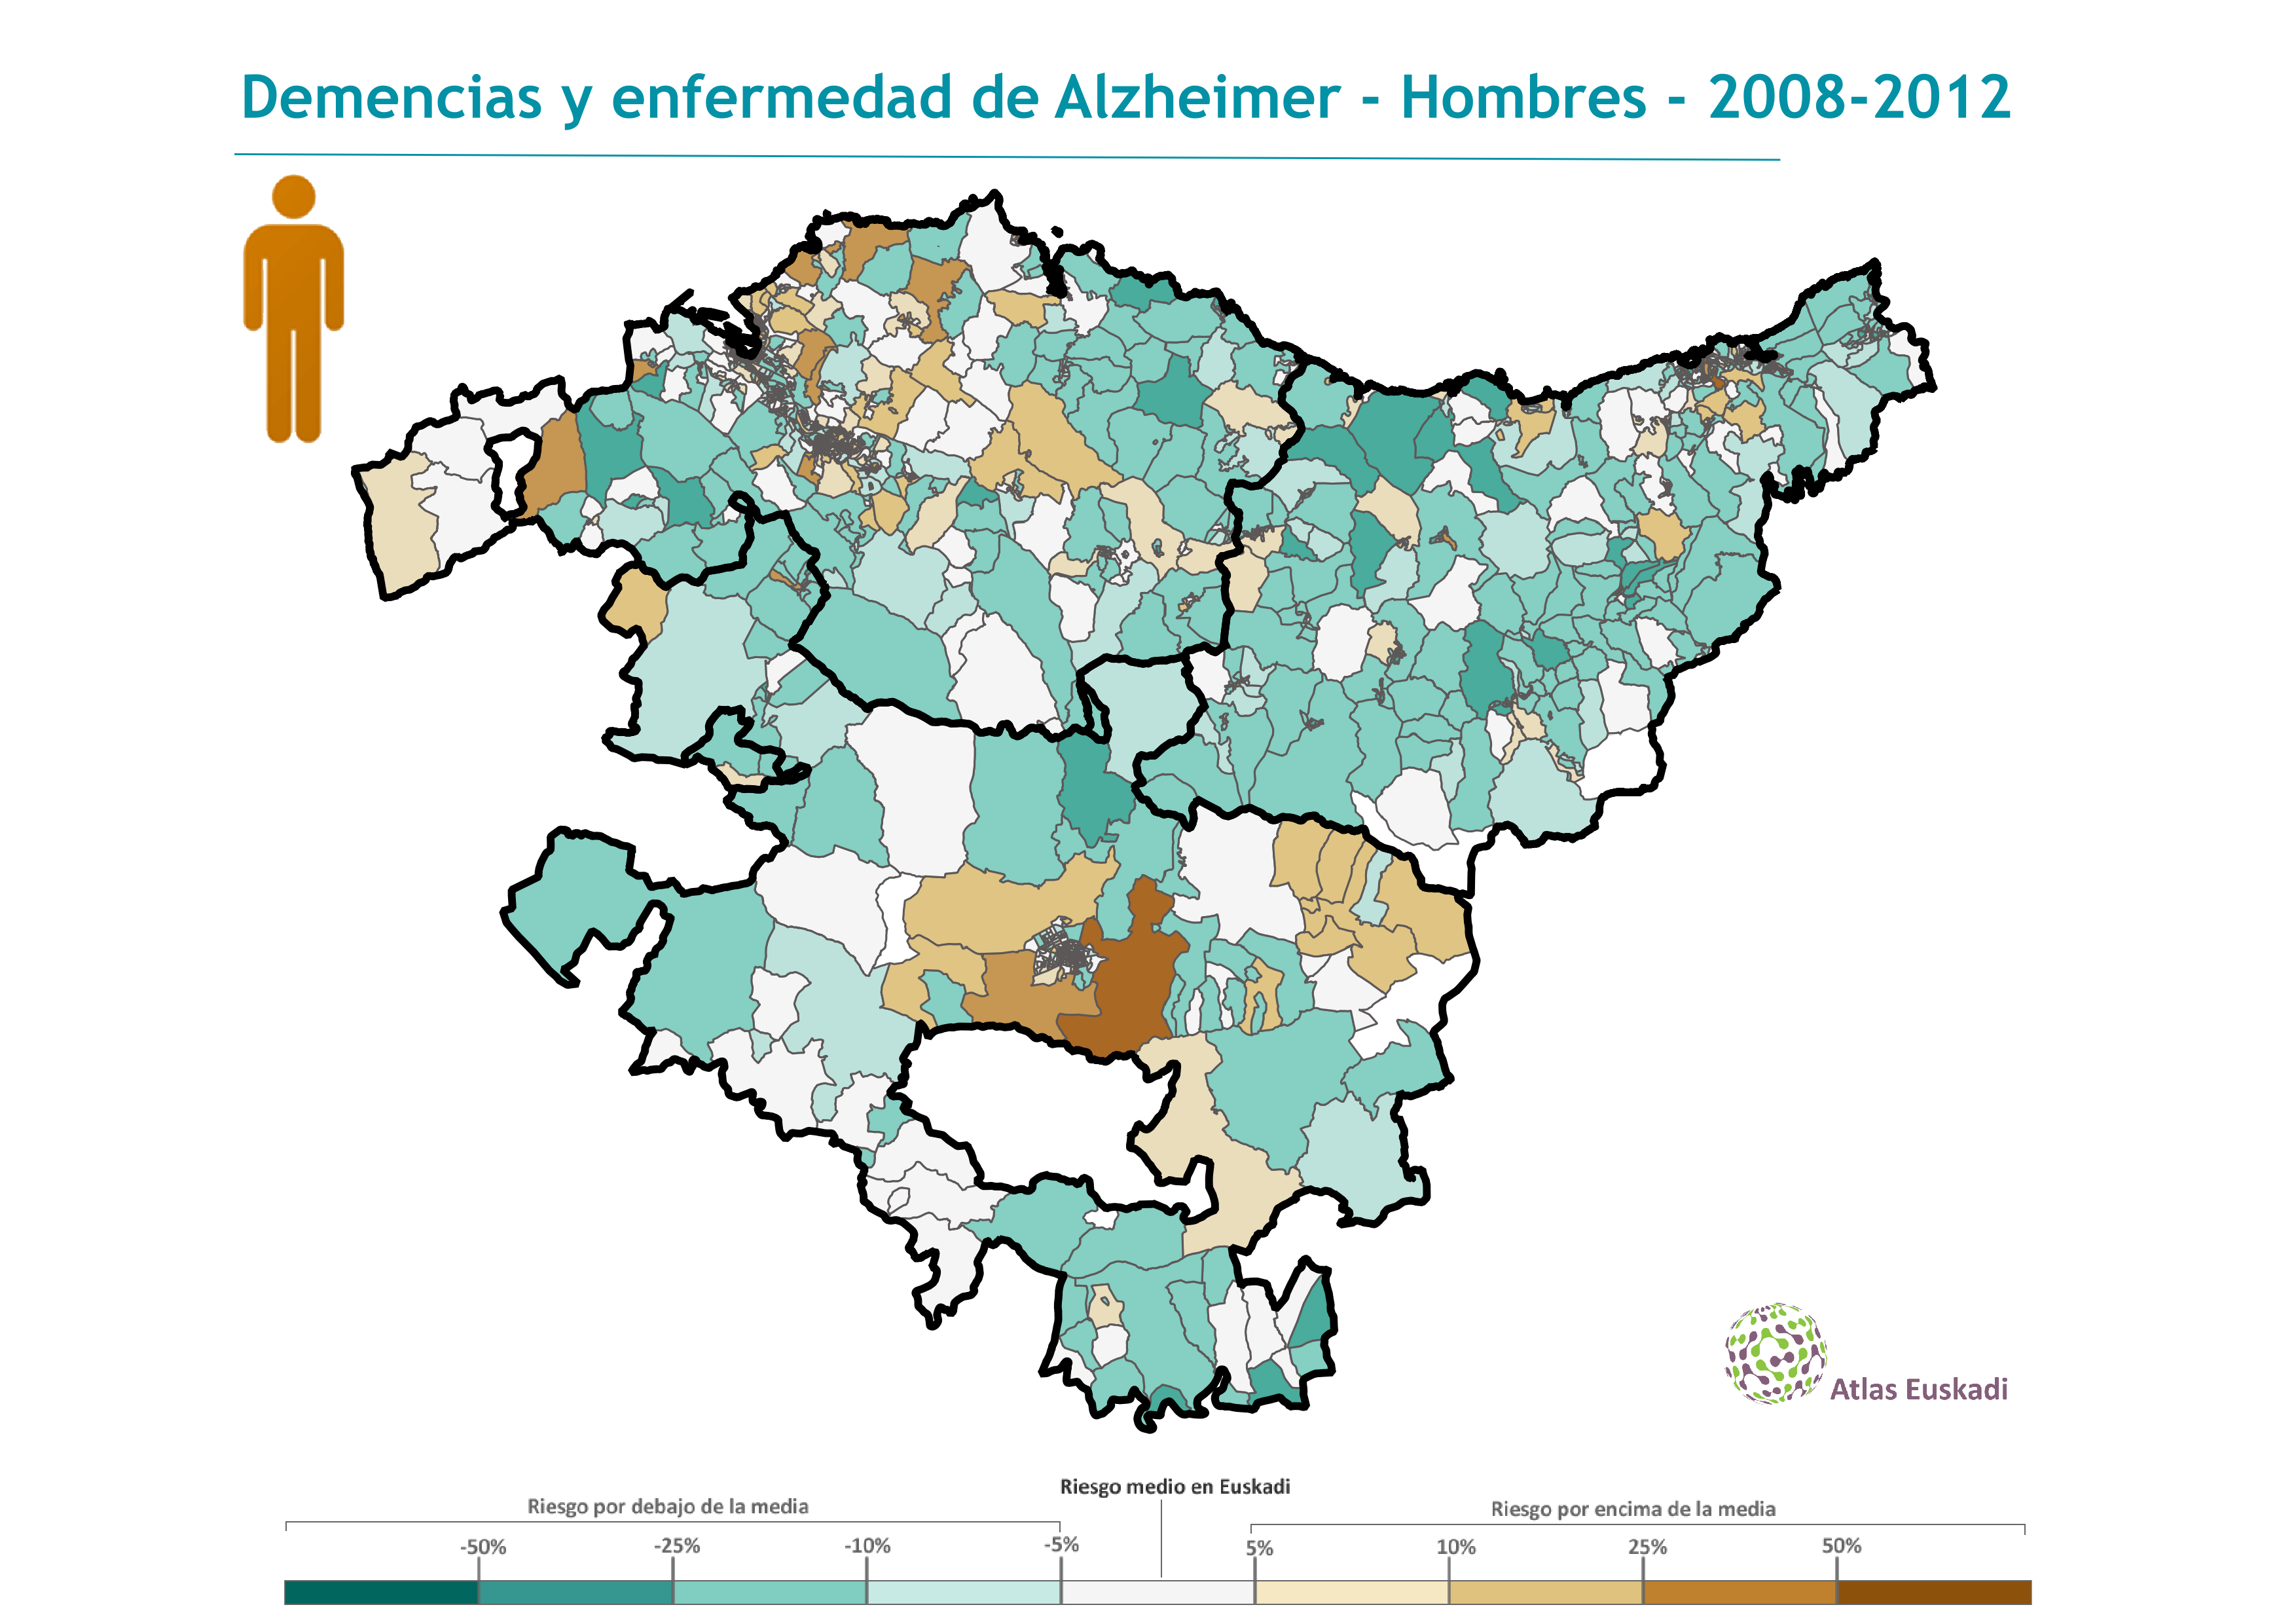 Demencias y enfermedad de Alzheimer hombres  2008-2012 Euskadi